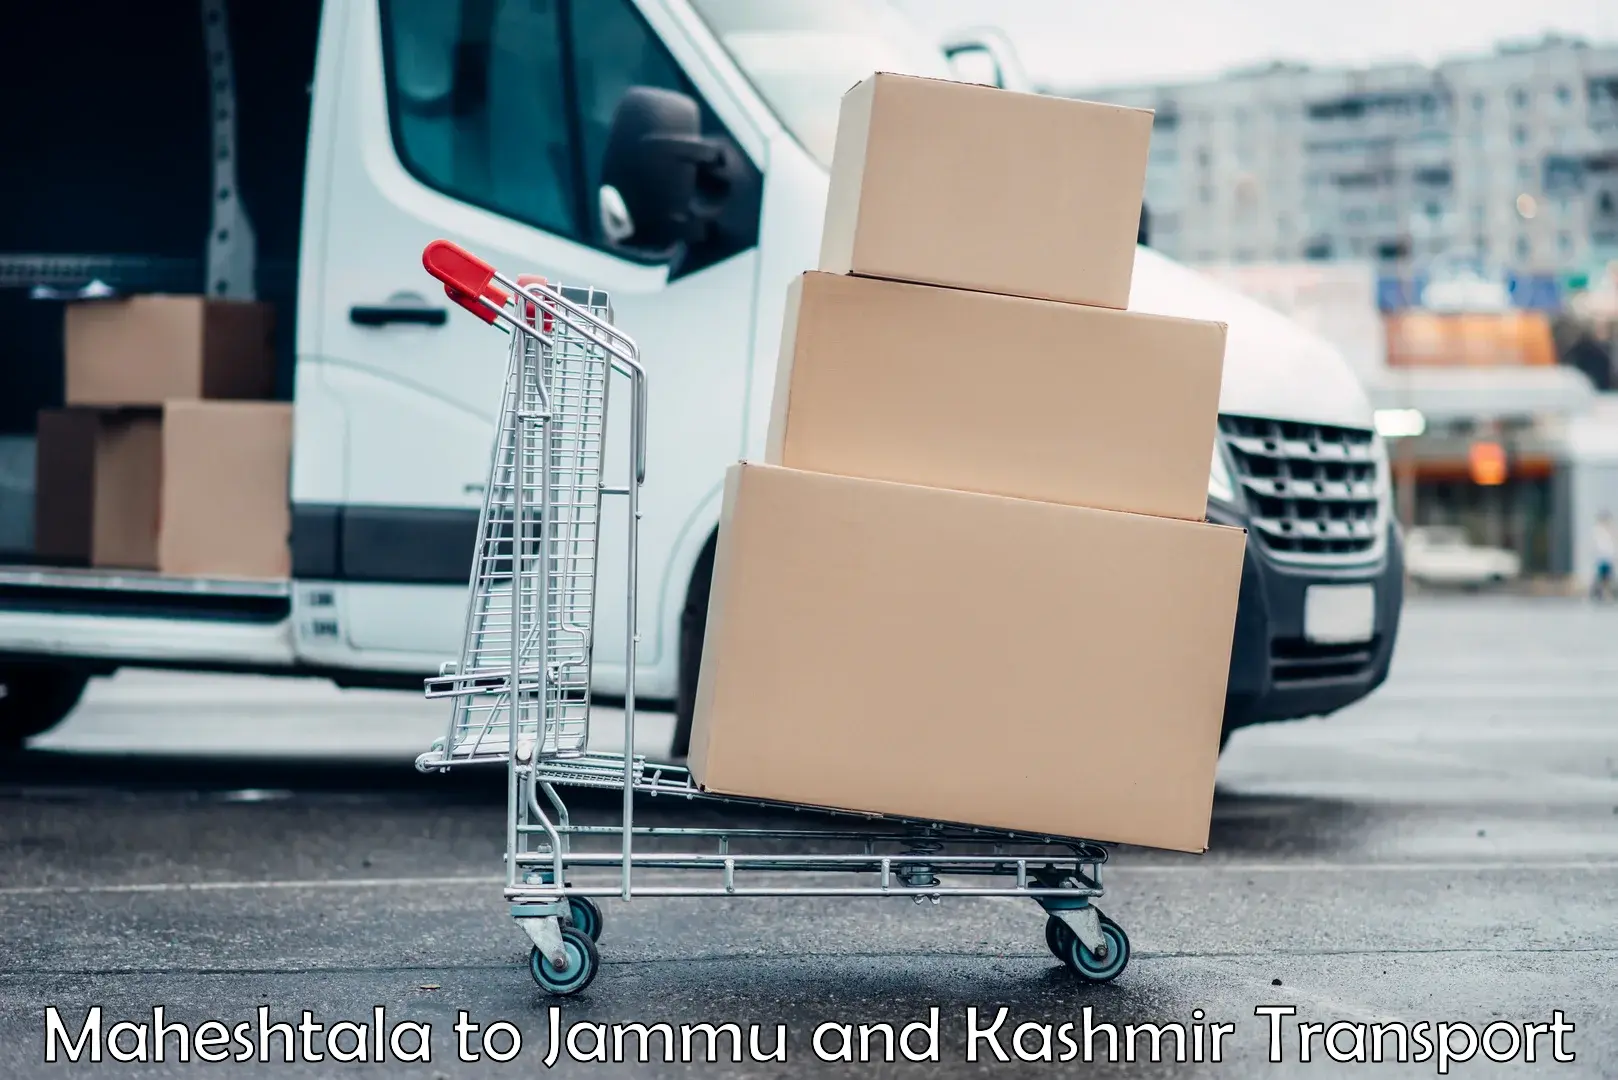 Cargo transportation services Maheshtala to Jammu and Kashmir